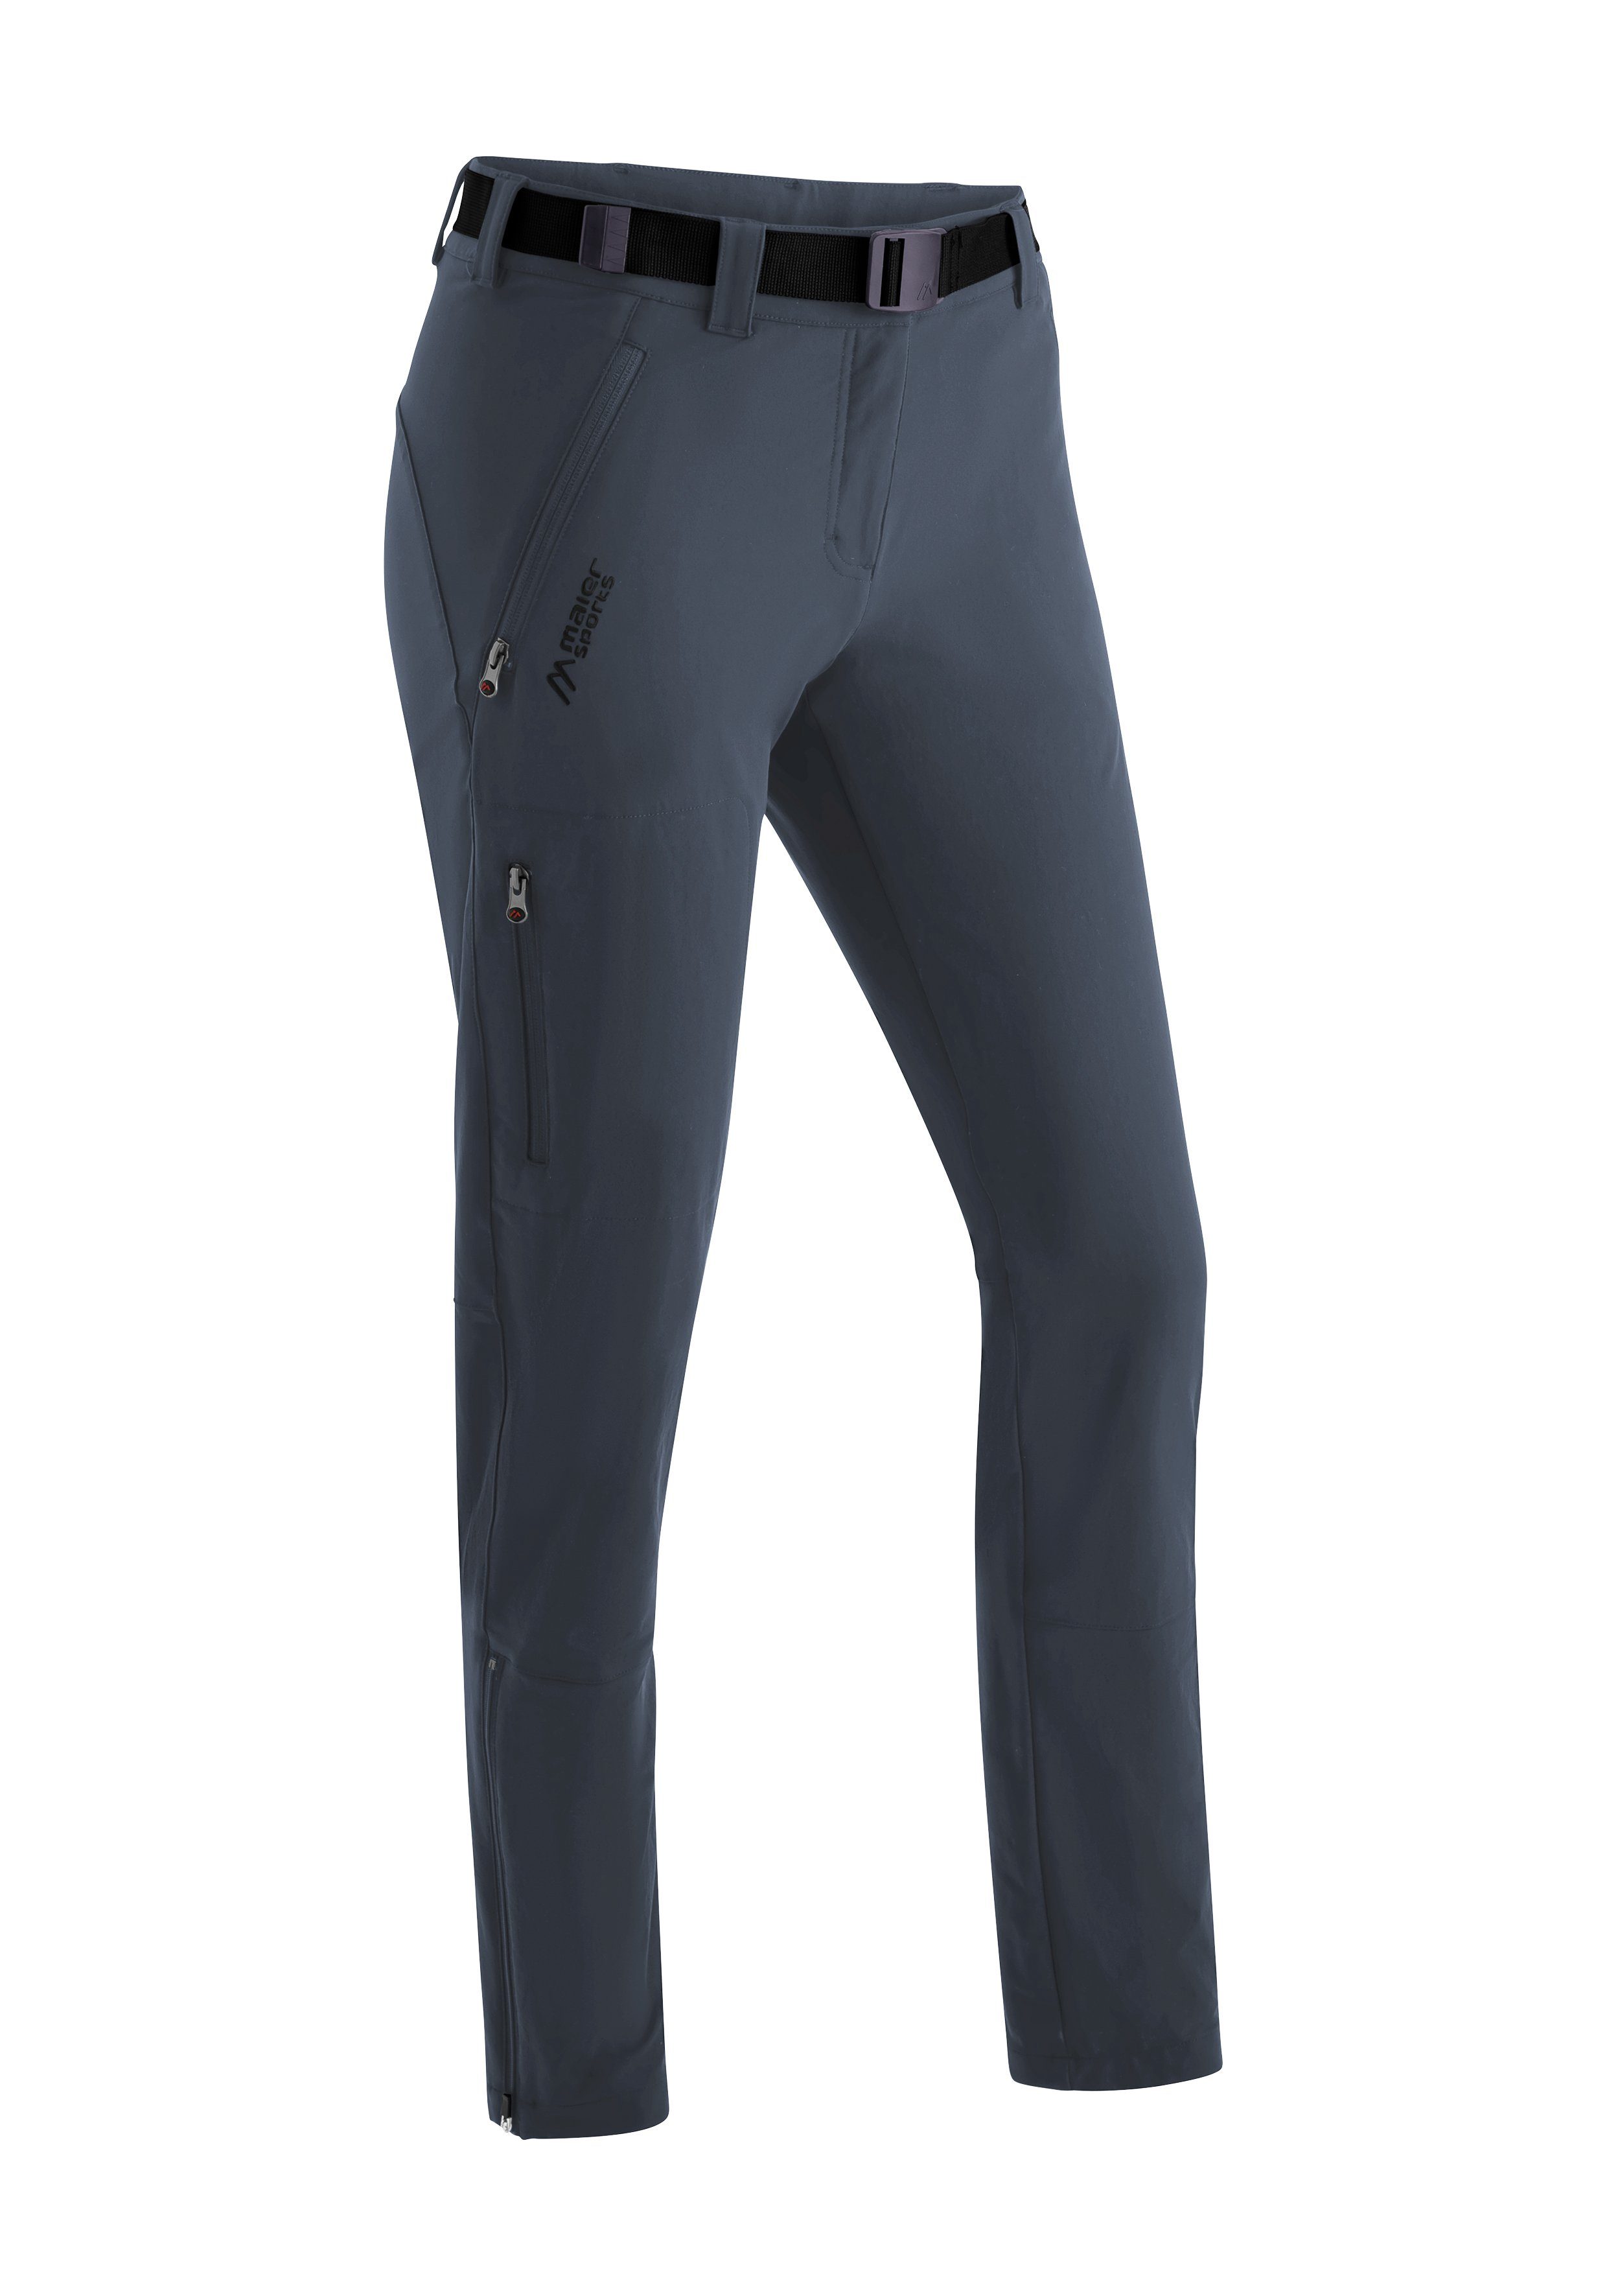 Maier Sports schnelltrocknend Trekkinghose, Lana Slimfit, slim elastisch, Funktionshose graublau